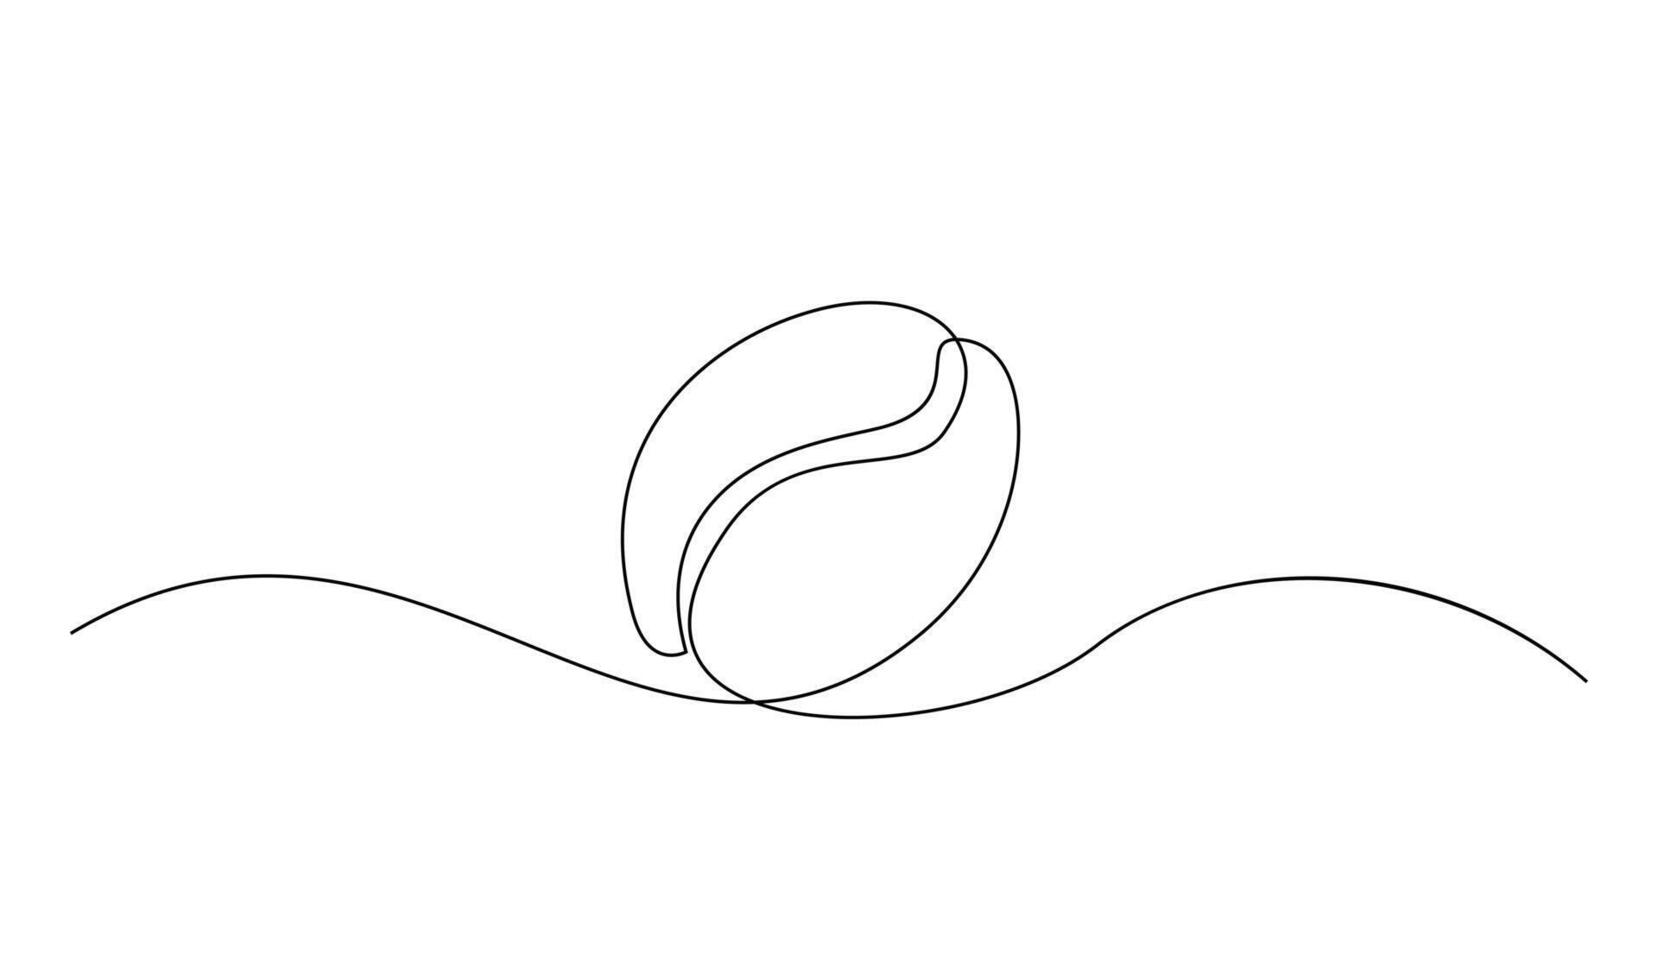 linear café grão fundo. 1 contínuo linha desenhando do uma café feijão vetor